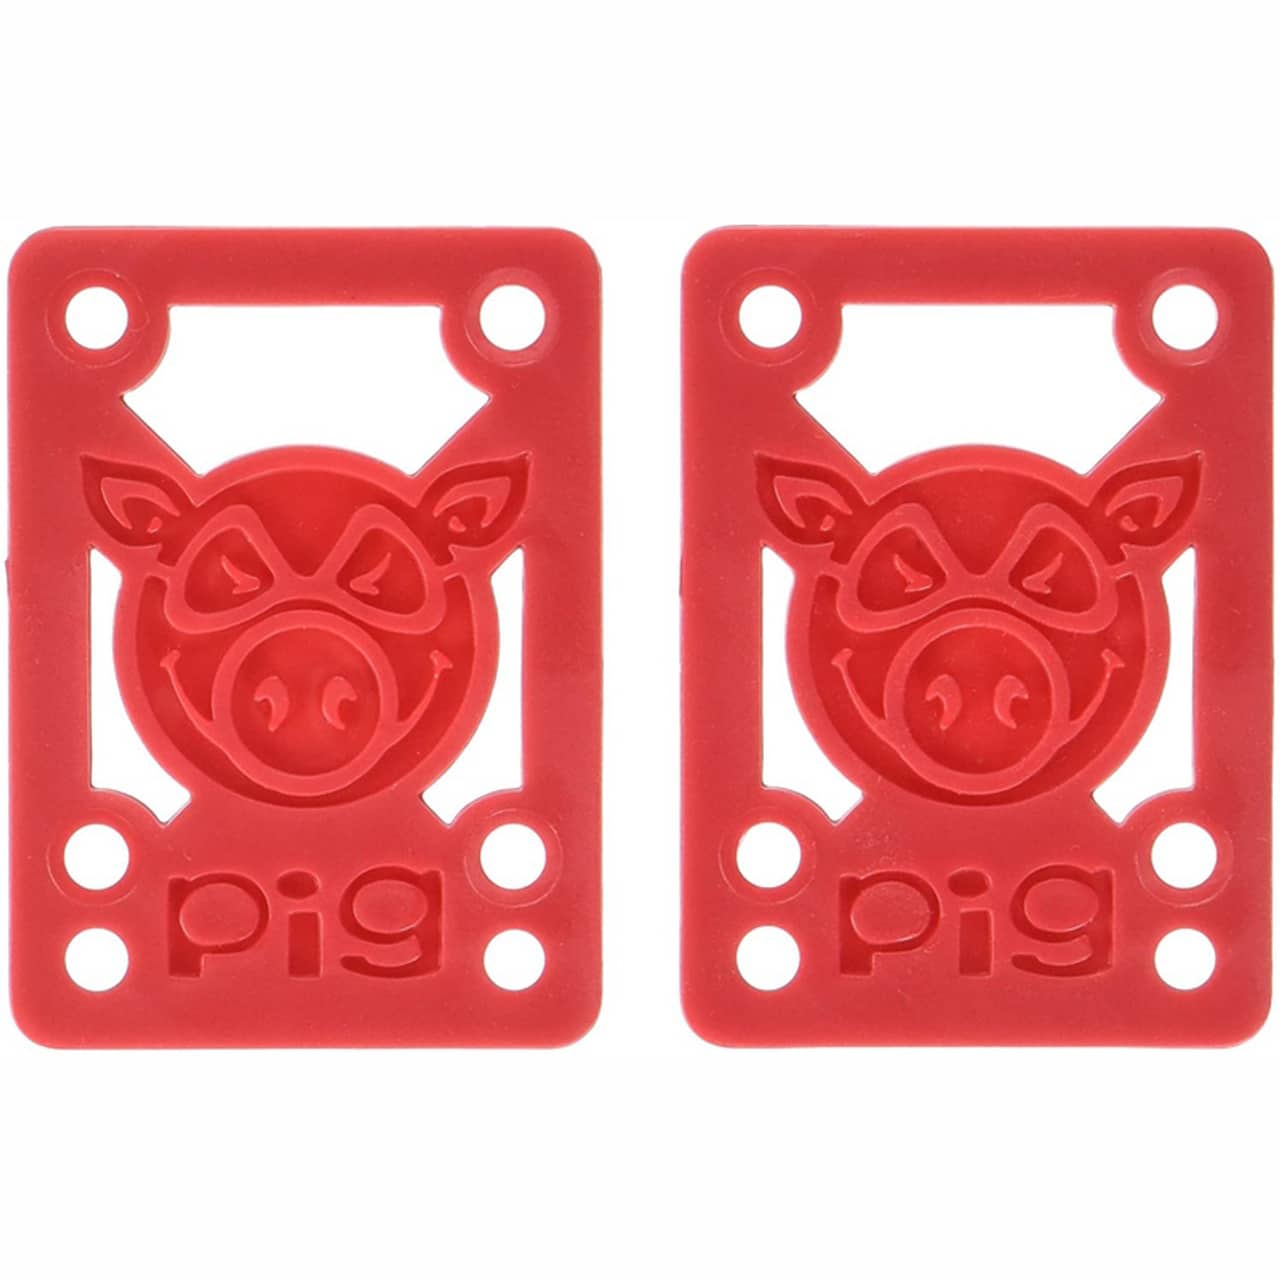 Pig Pads 0.12522 Soft Red